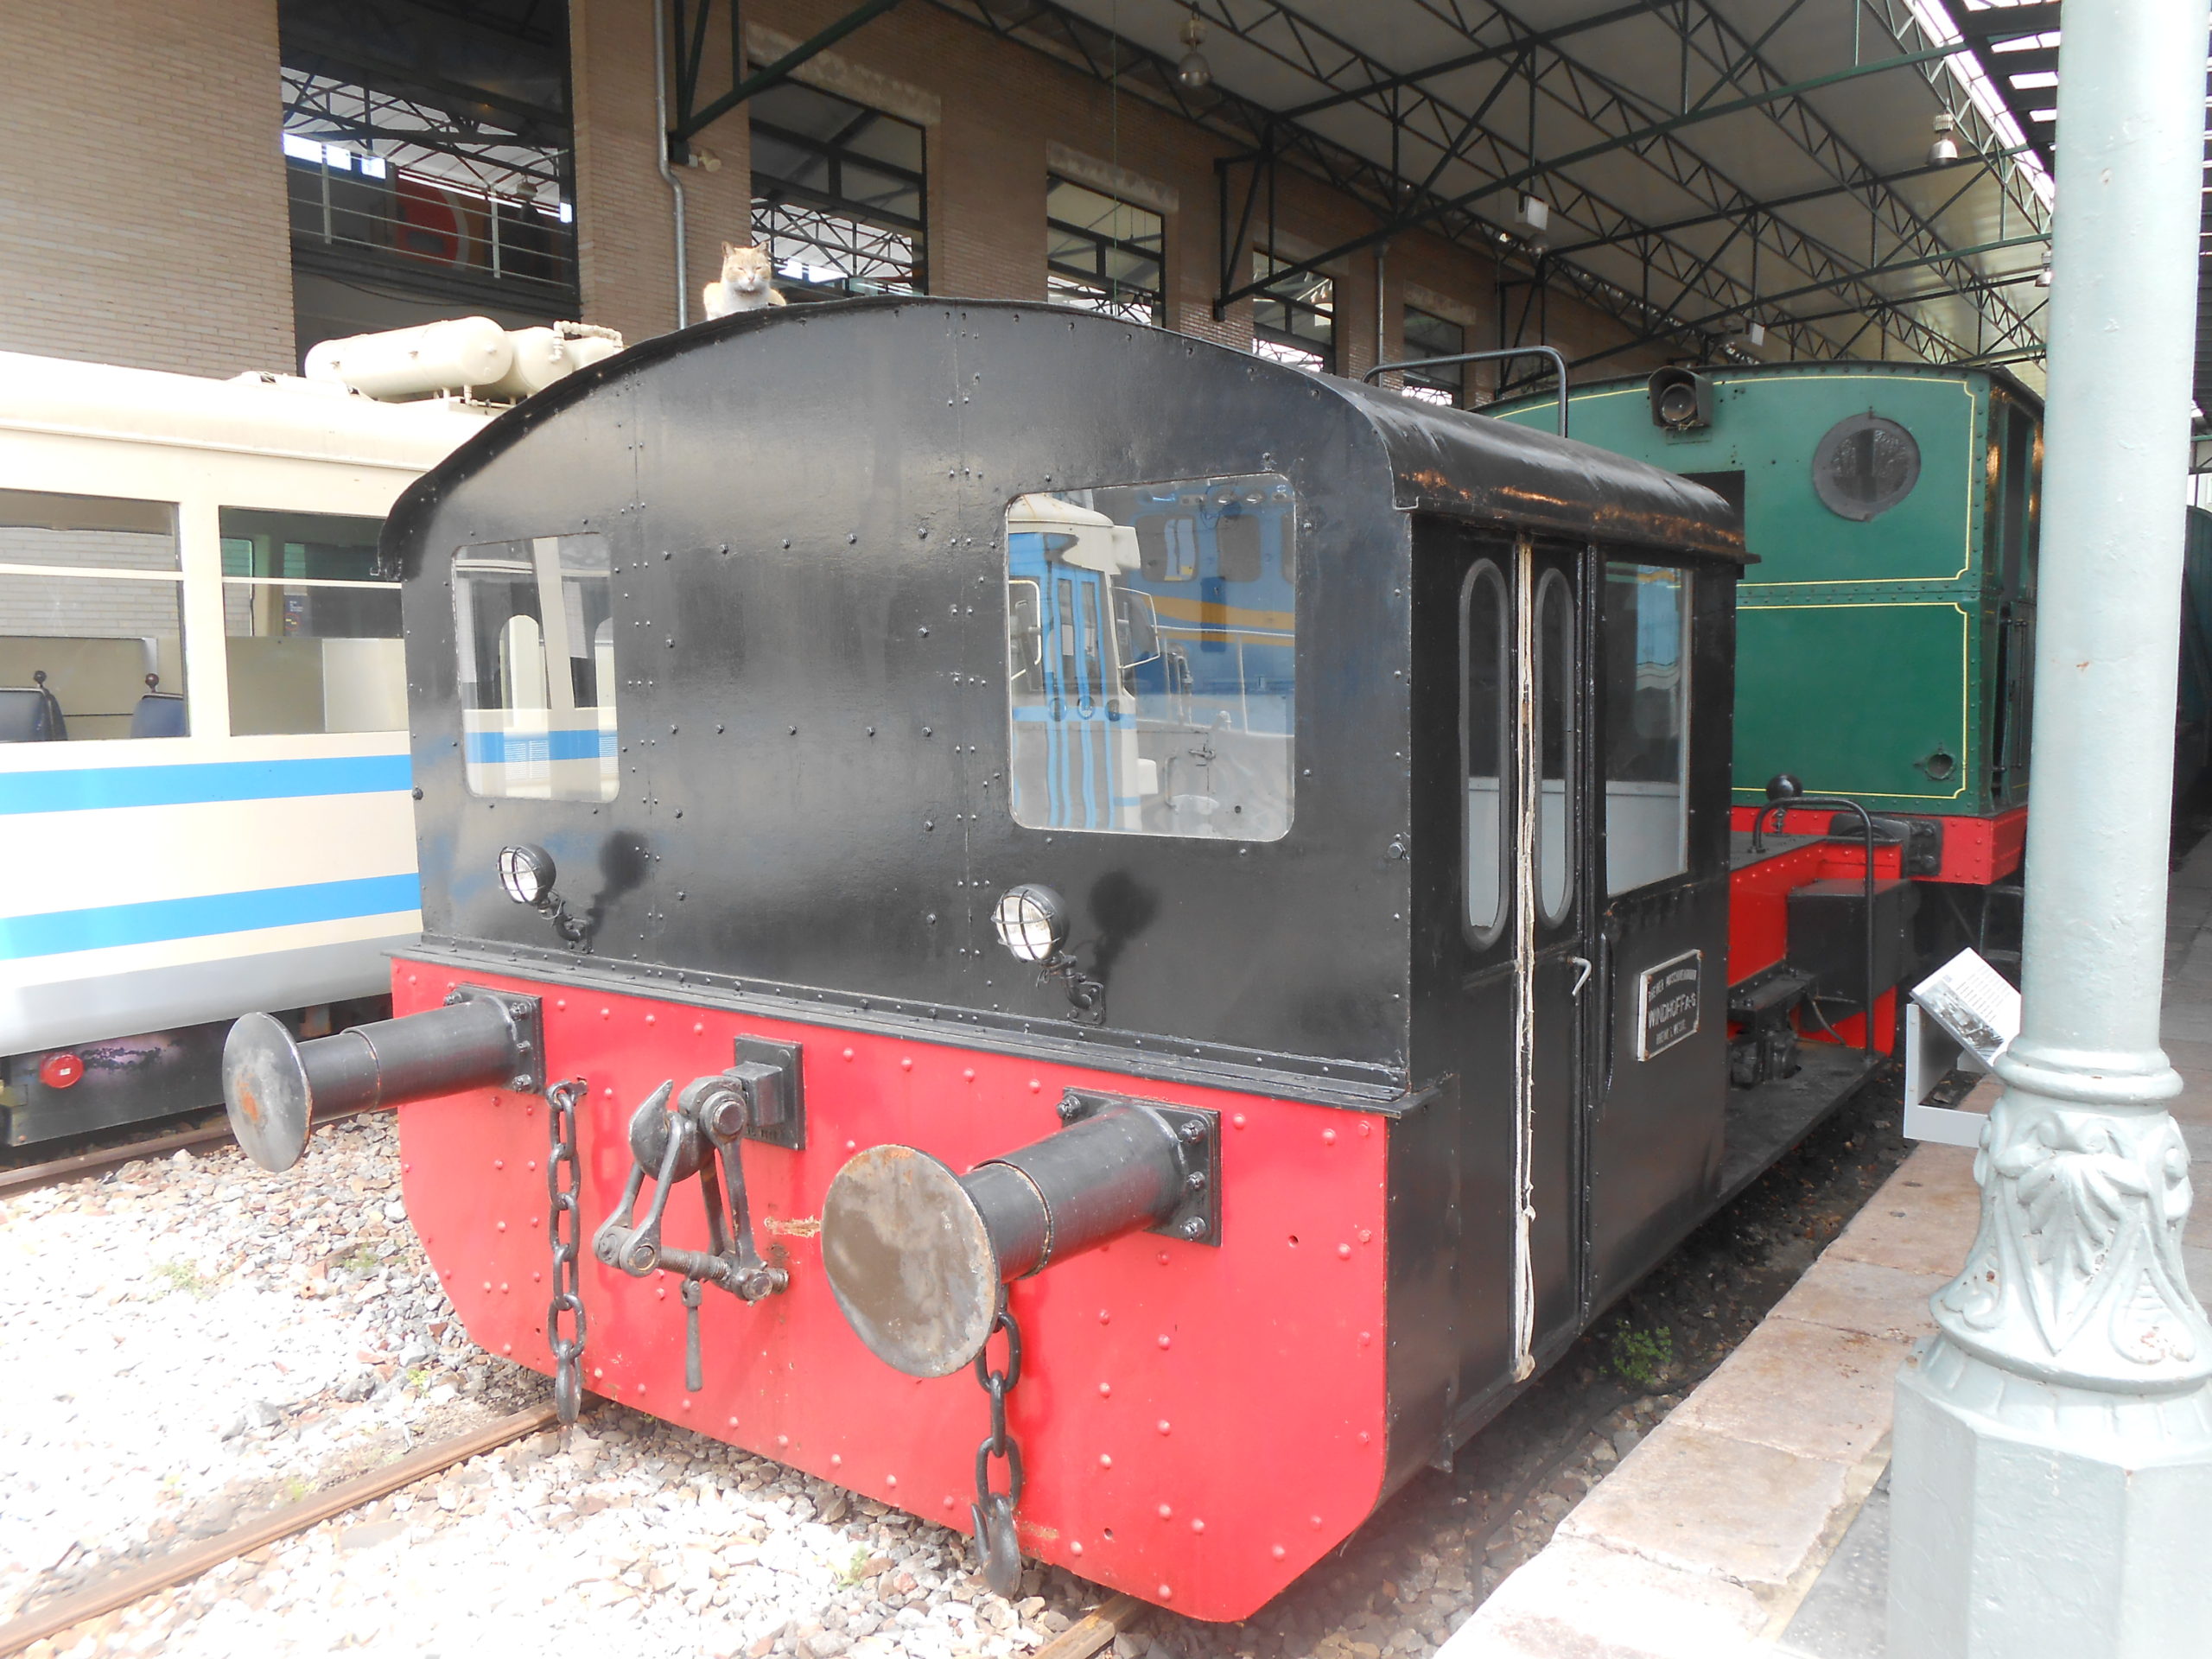 Railway Museum in Gijón